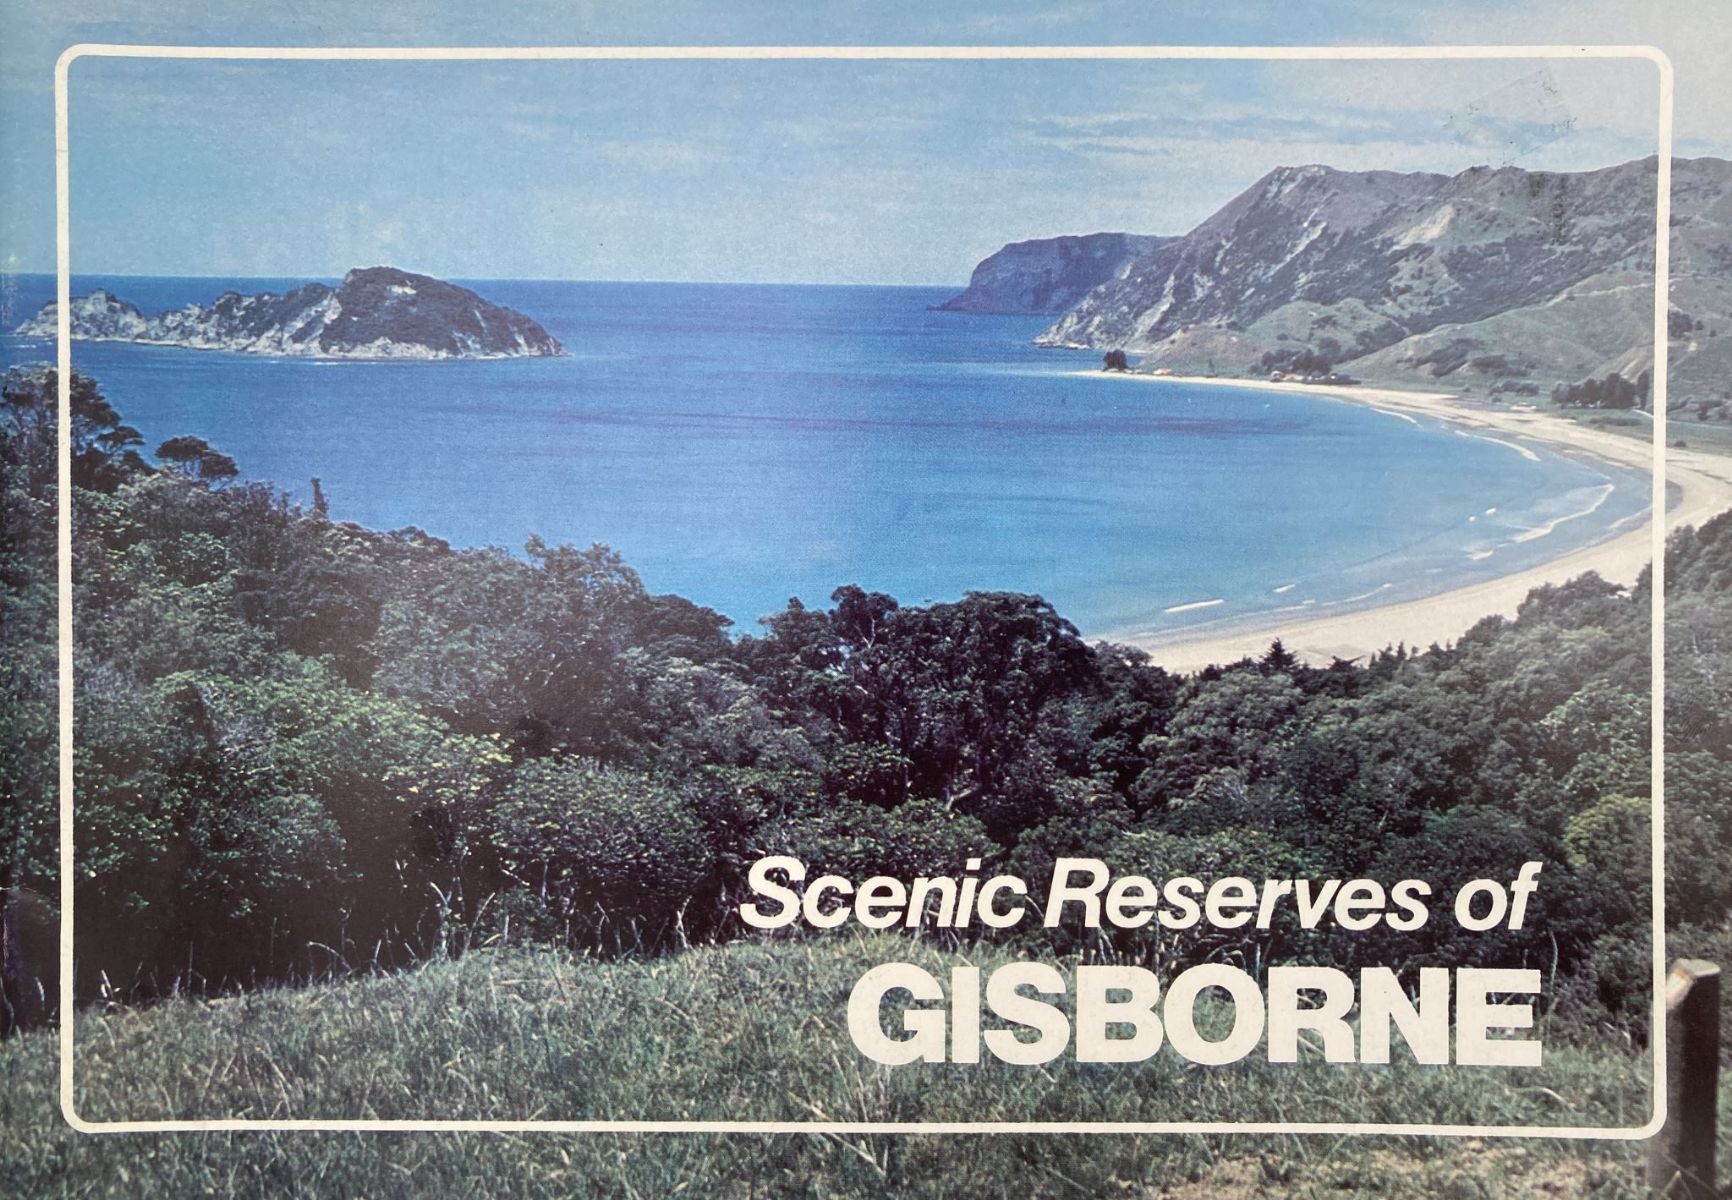 SCENIC RESERVES OF GISBORNE